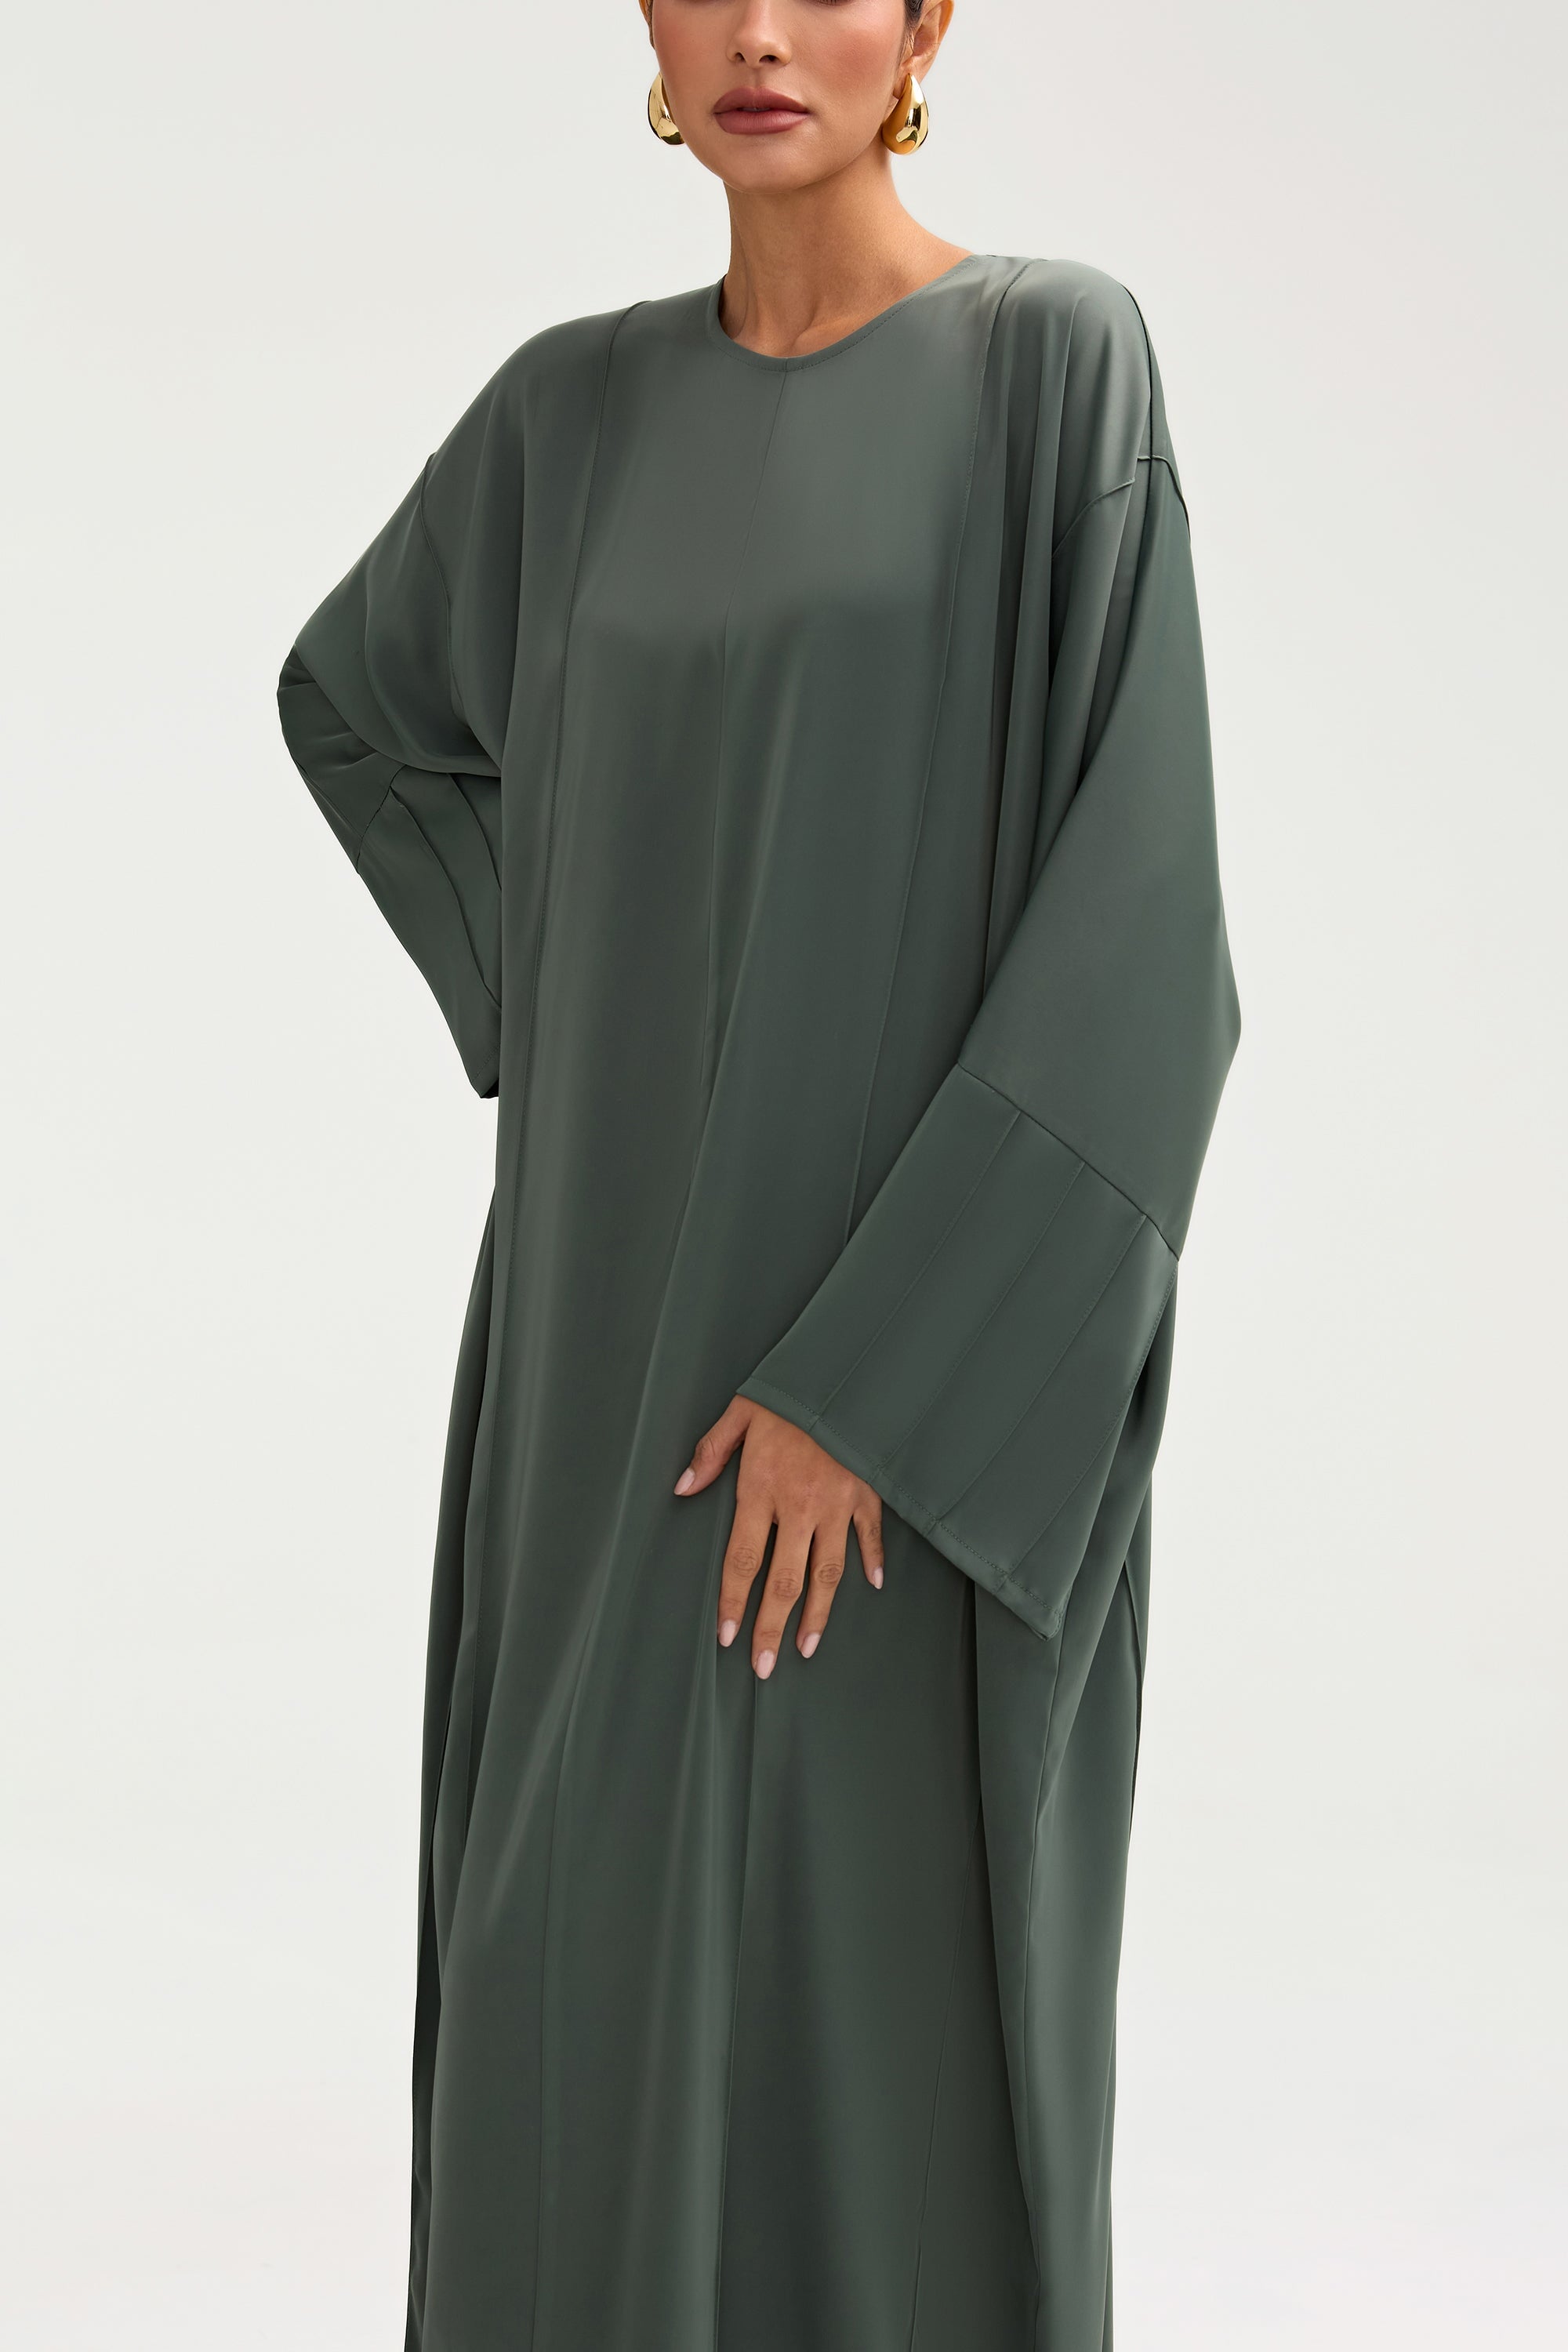 Sidrah Satin Kaftan - Sage Clothing Veiled 